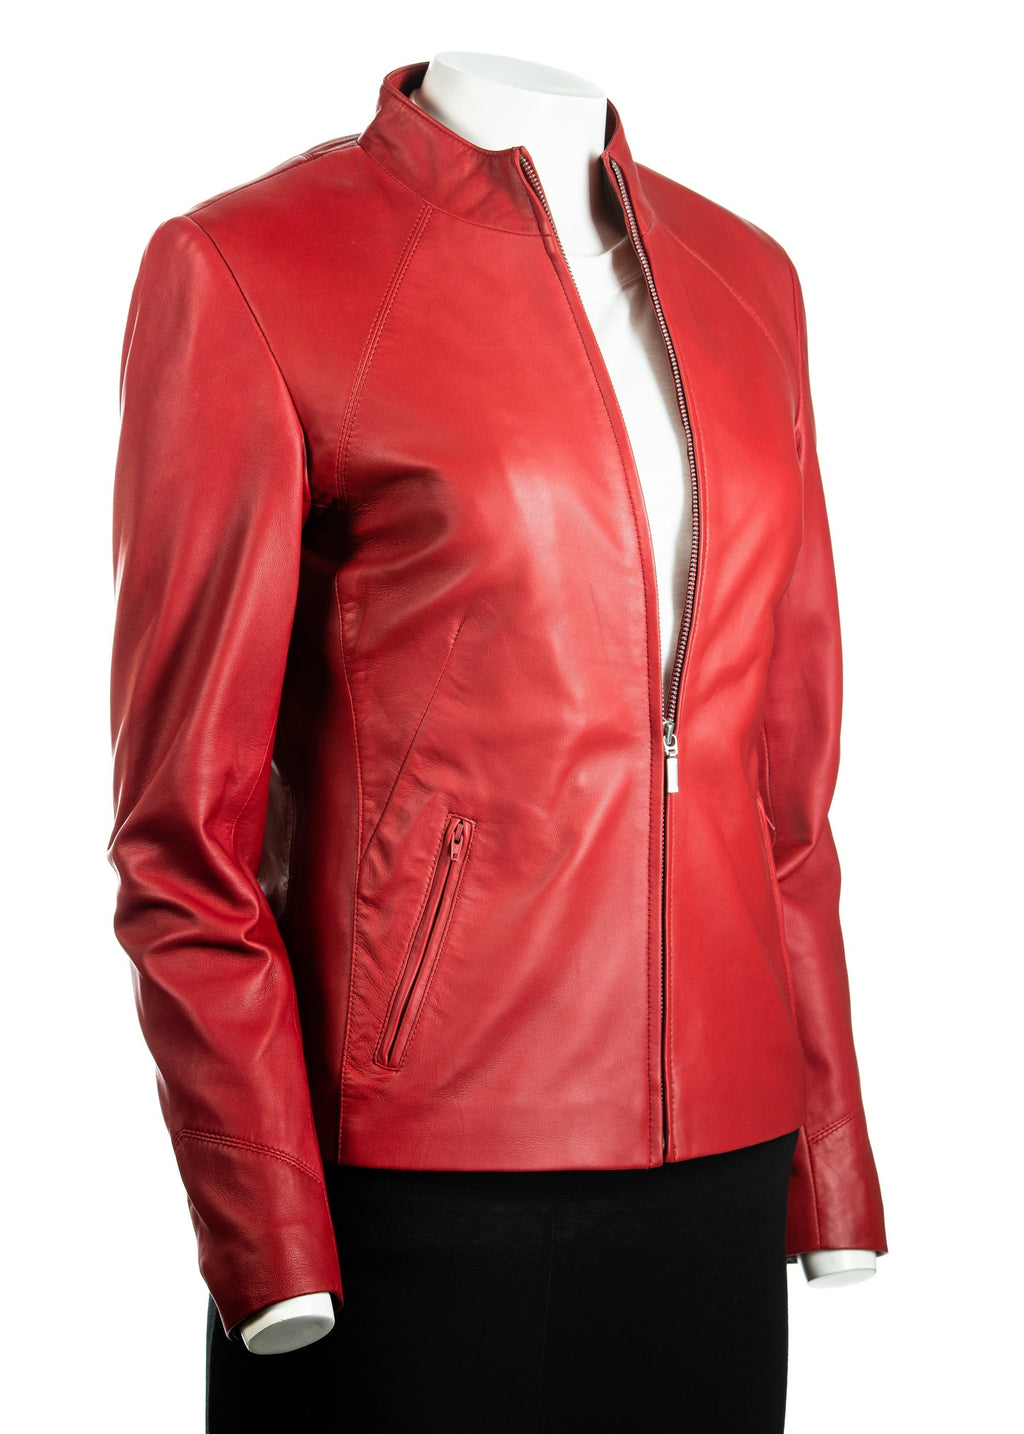 Ladies Red Plain Short Zipped Leather Jacket: Angelina